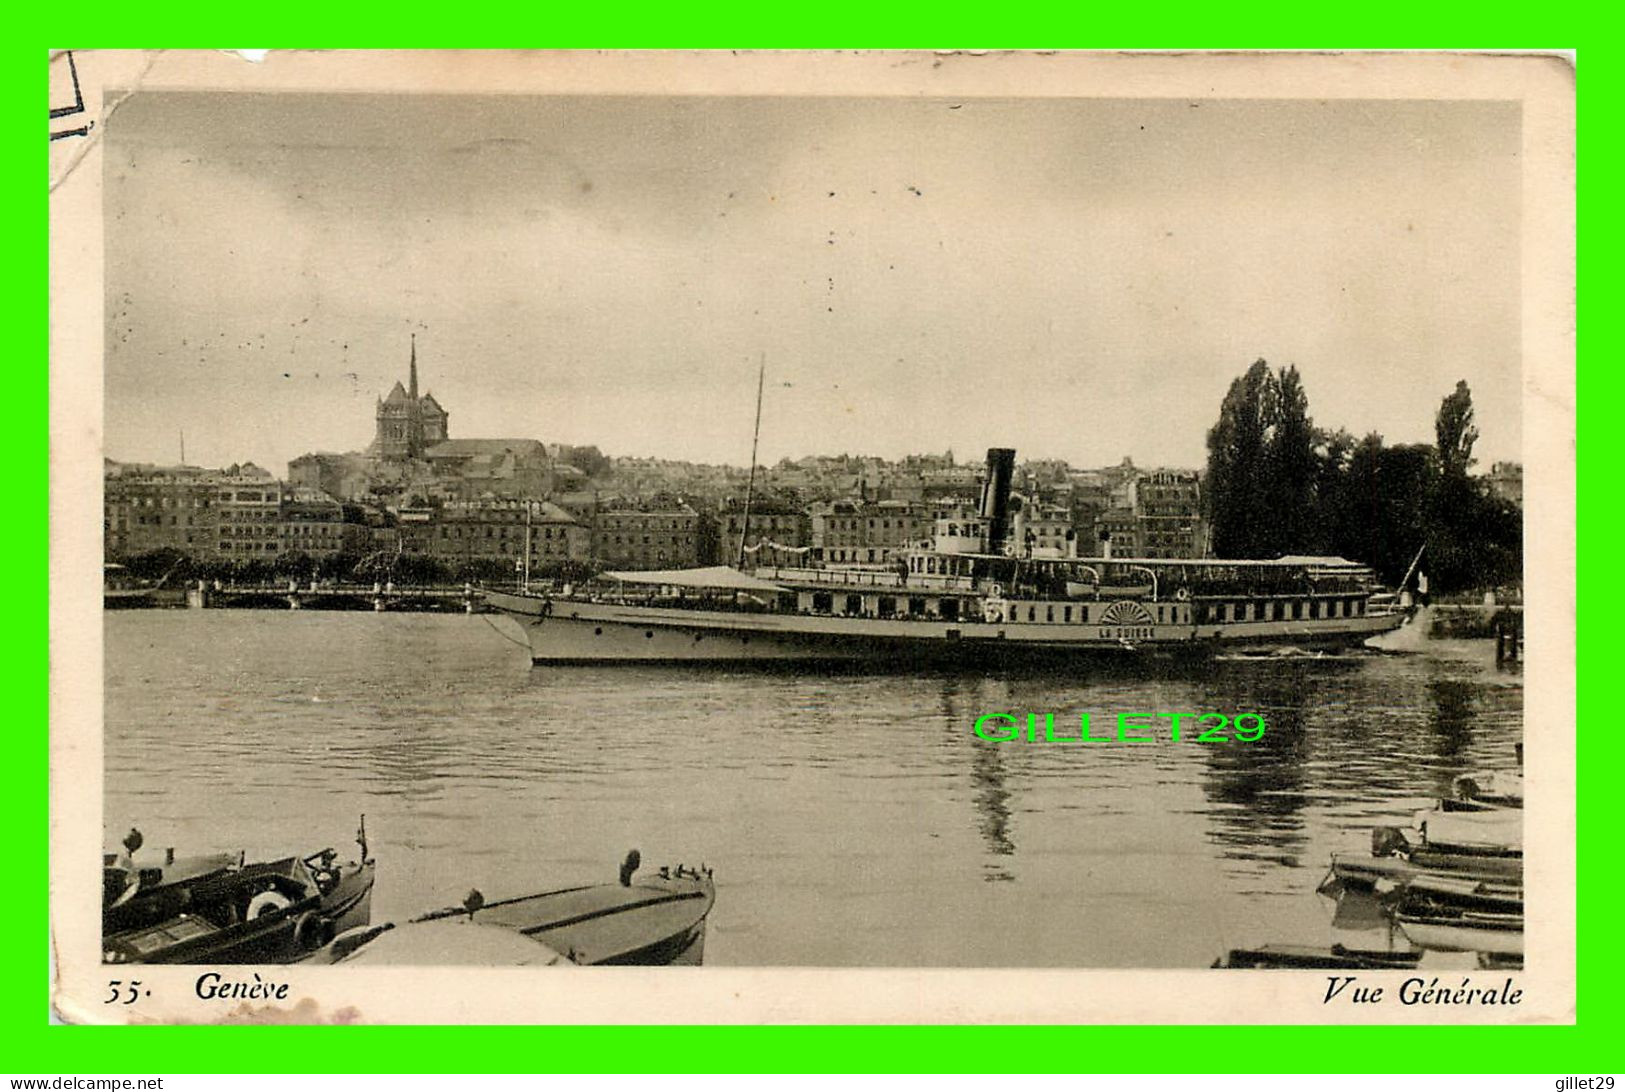 SHIP, BATEAU - " LA SUISSE " - GENÈVE - CIRCULÉE EN 1935 - VUE GÉNÉRALE - EDITIONS PAUL LEBET - - Commerce